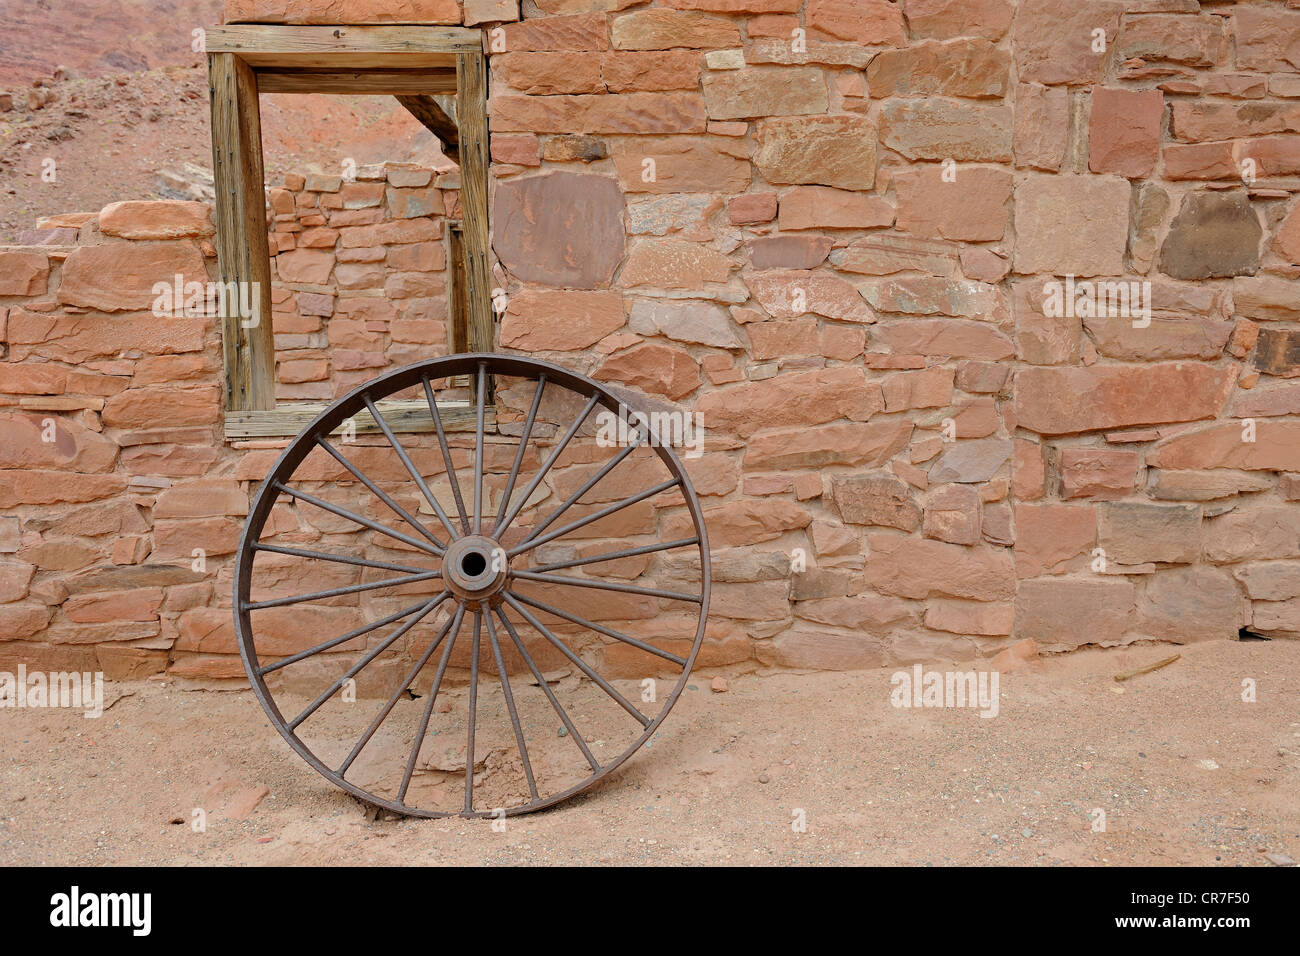 El hierro viejo Wagon Wheel, Lee's Ferry, Arizona, EE.UU. Foto de stock